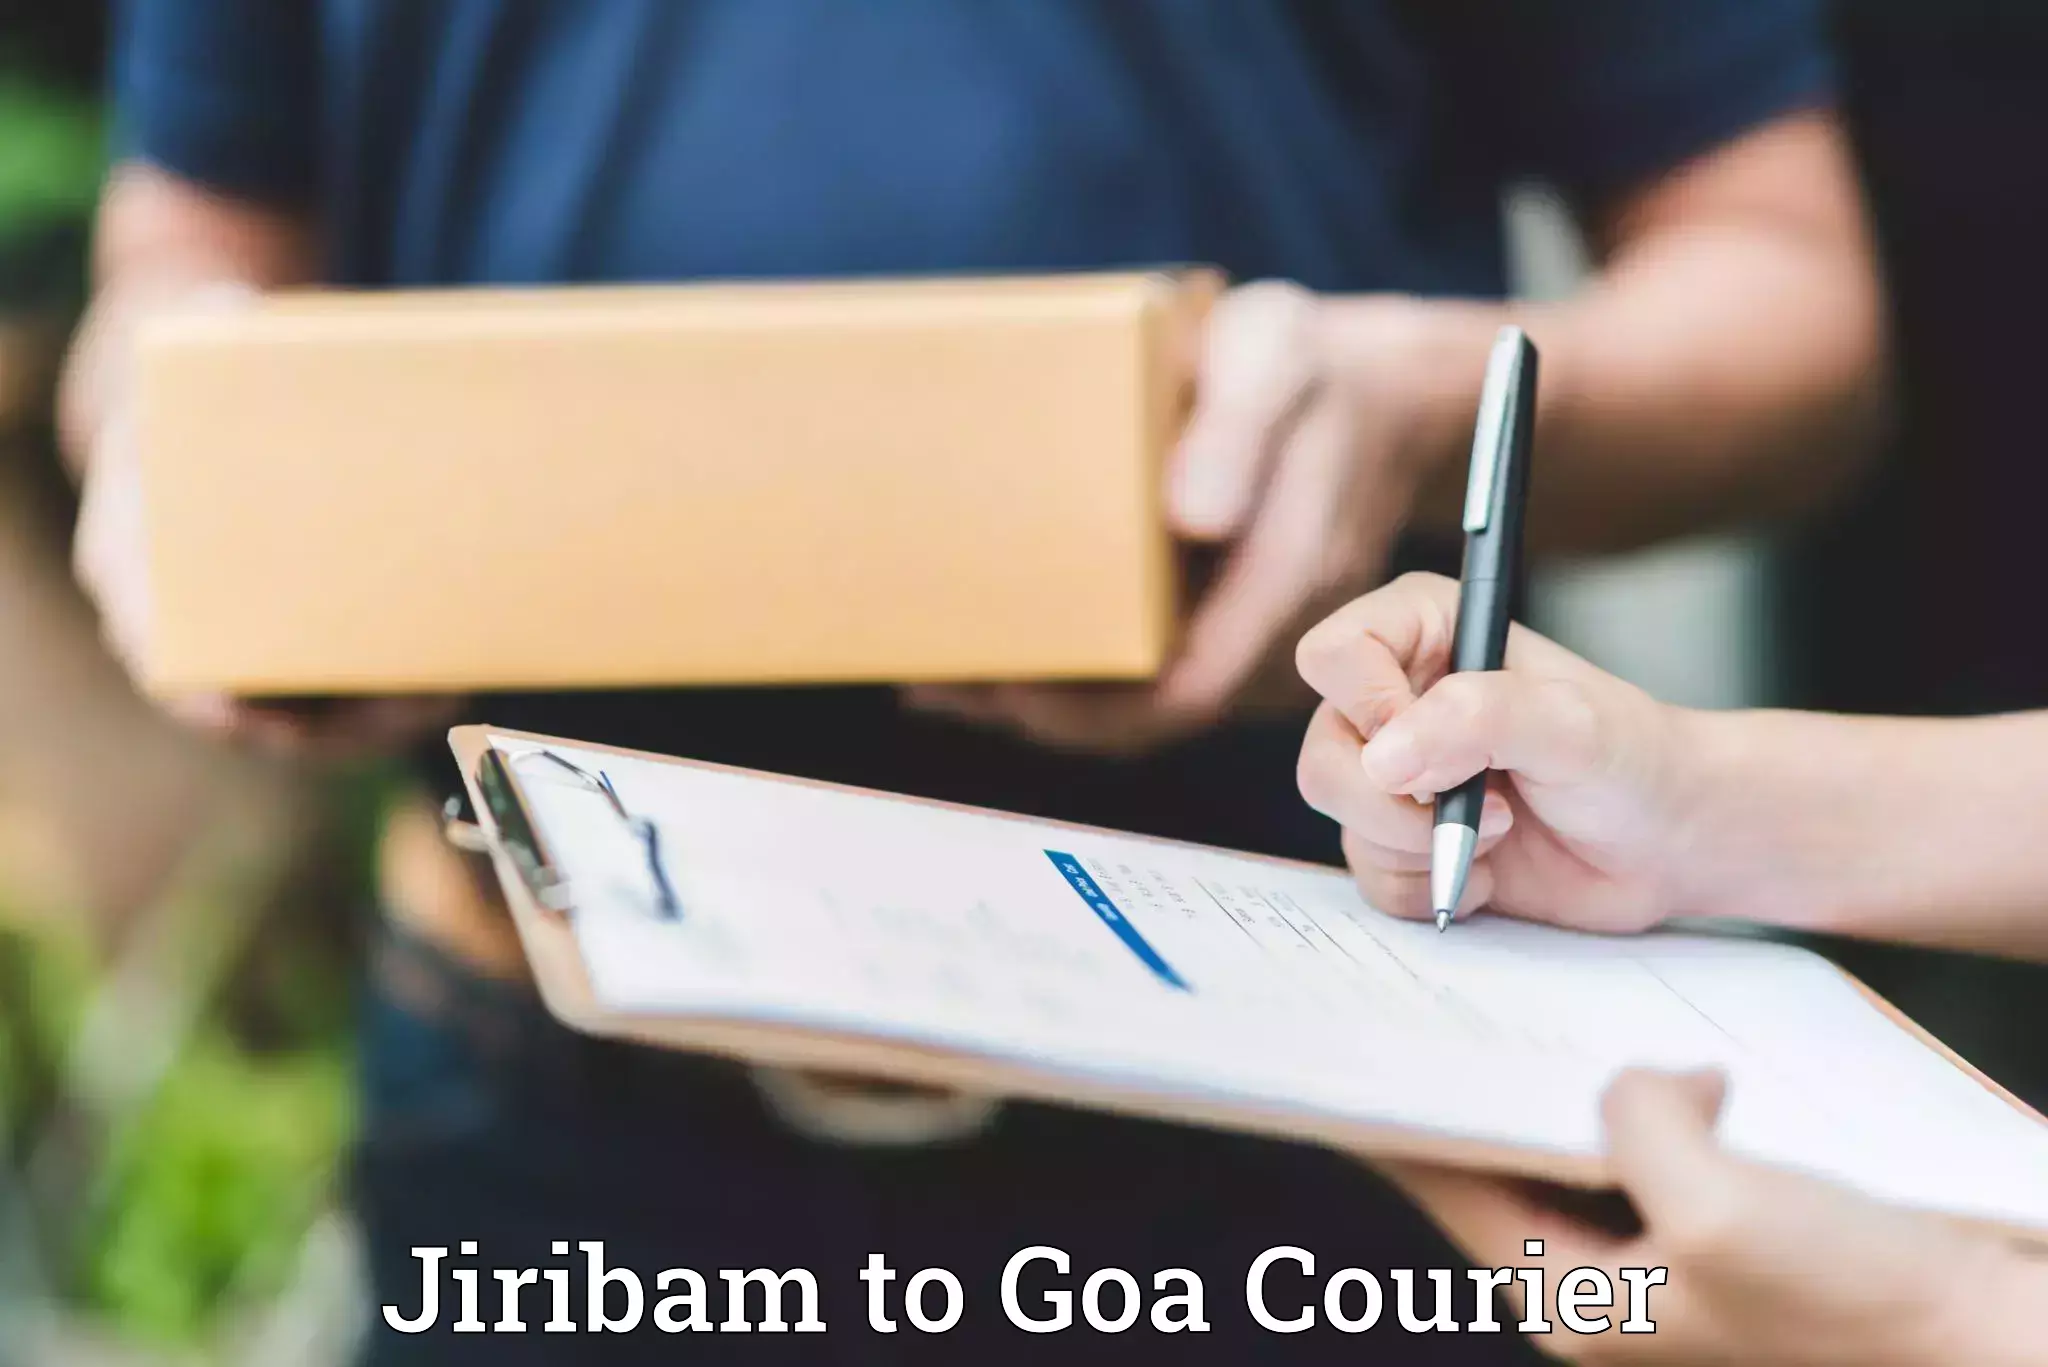 Luggage transport service Jiribam to Goa